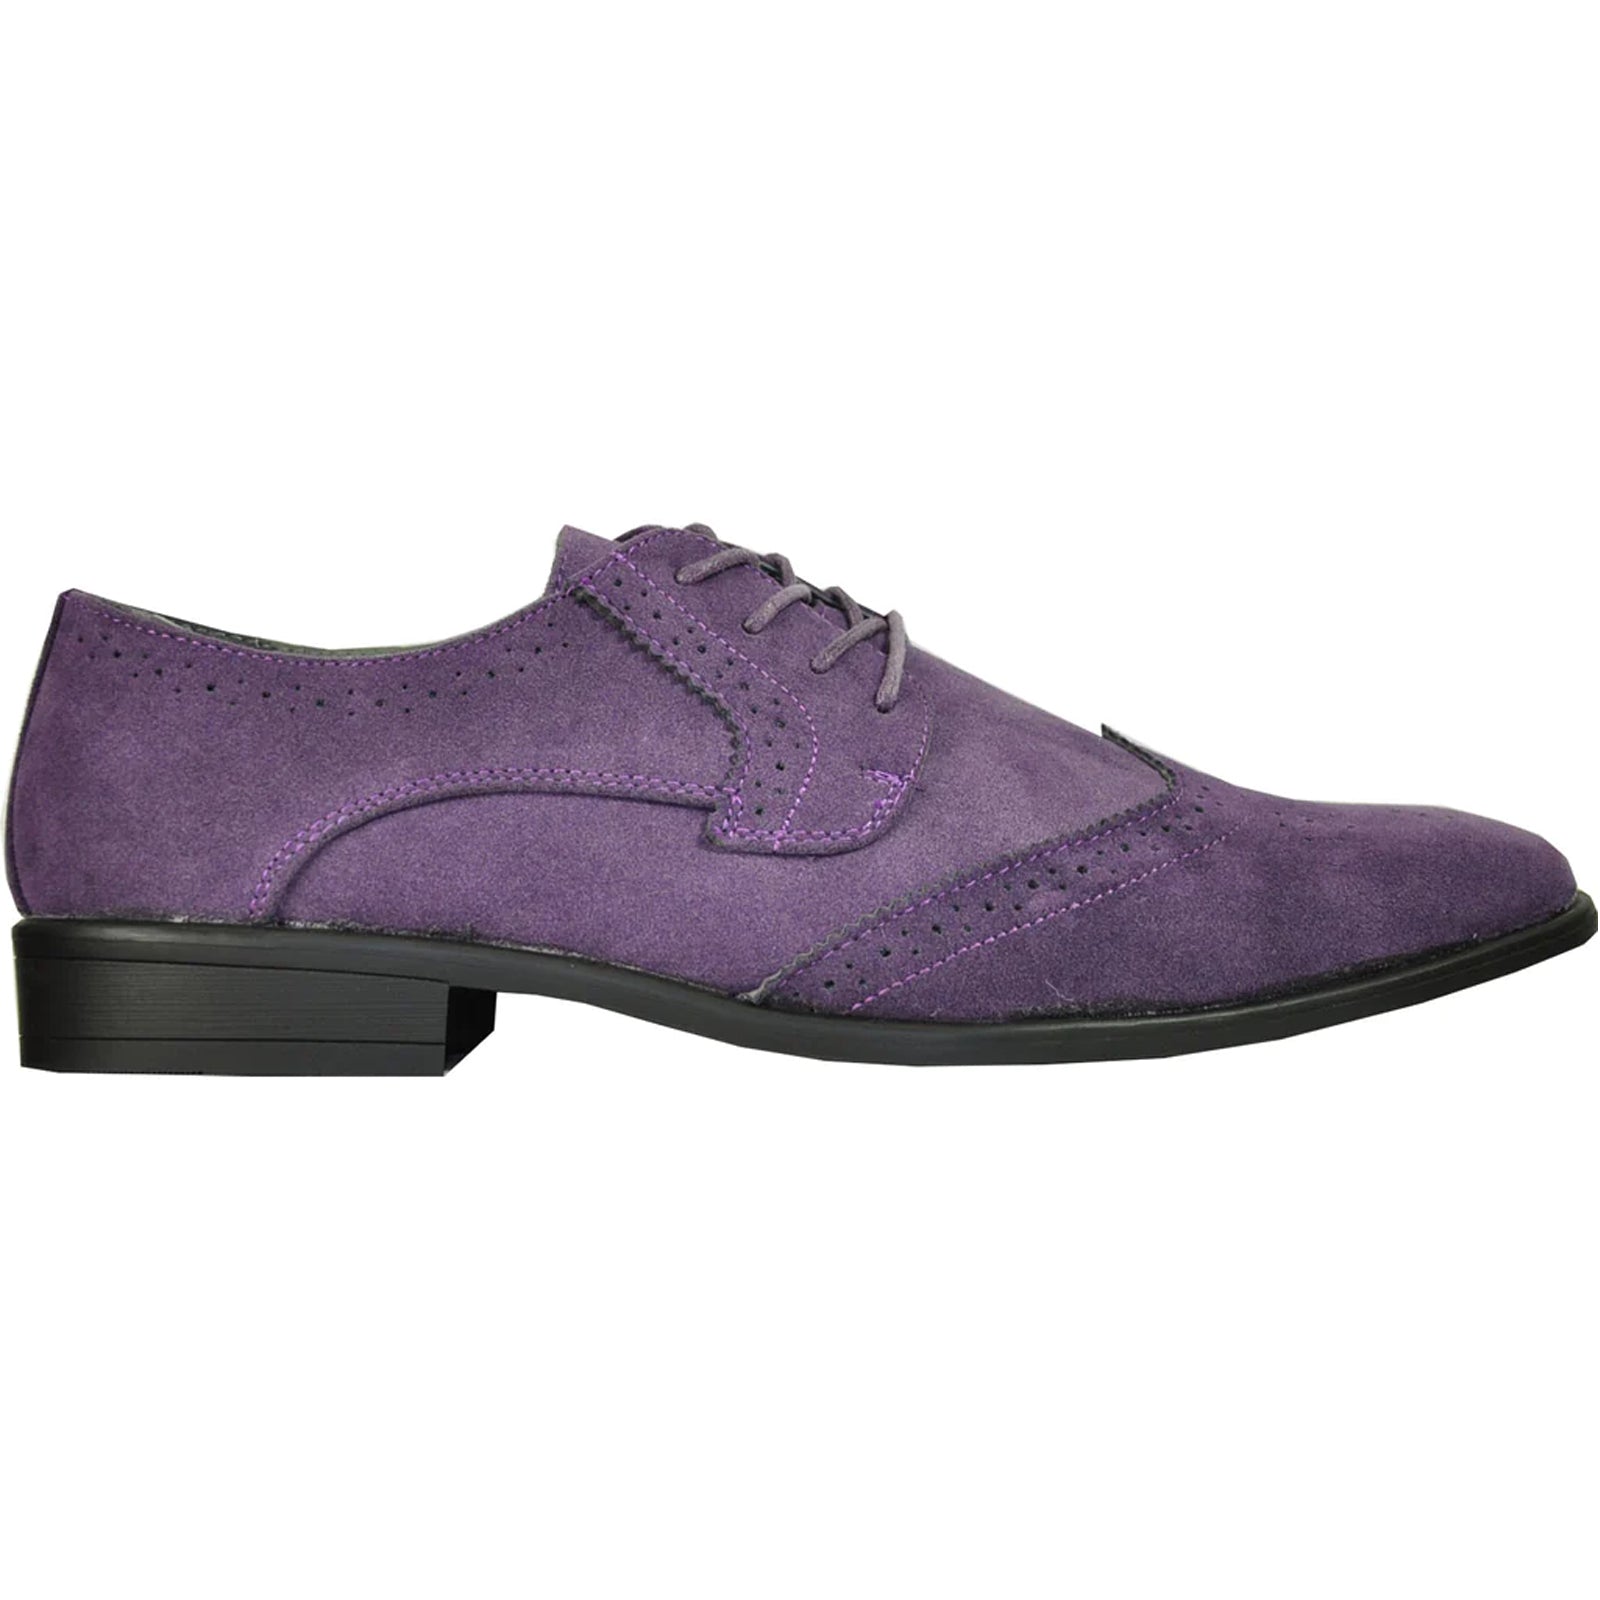 "Vegan Suede Men's Wingtip Dress Shoe - Purple for Wedding & Prom"